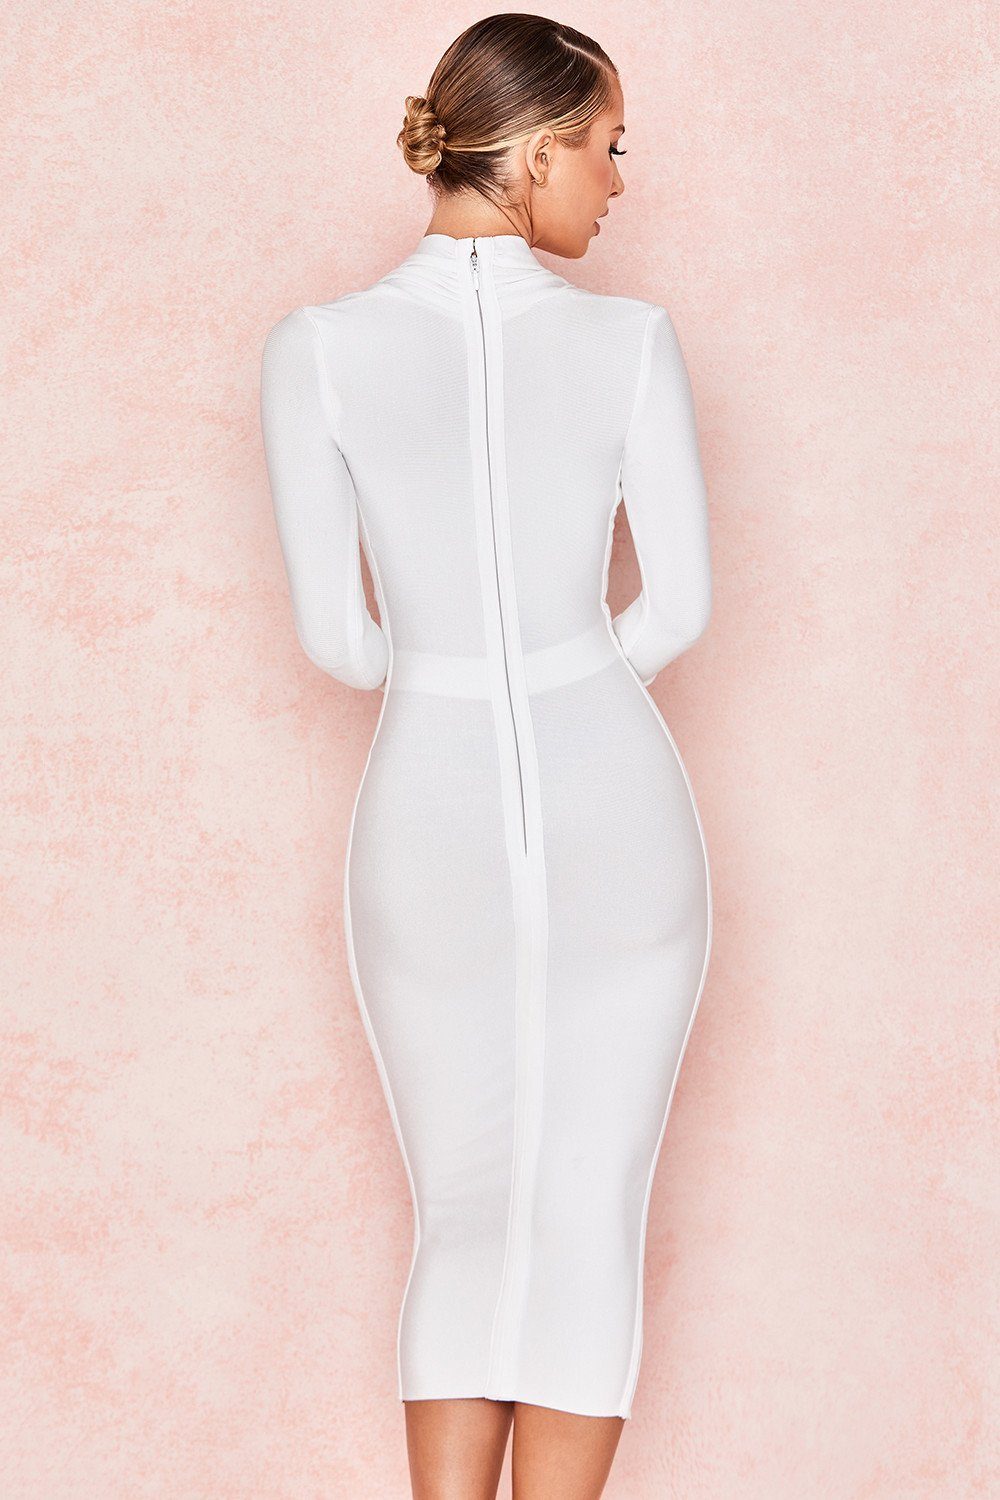 Full Sleeve Bandage party Dress-White aclosy